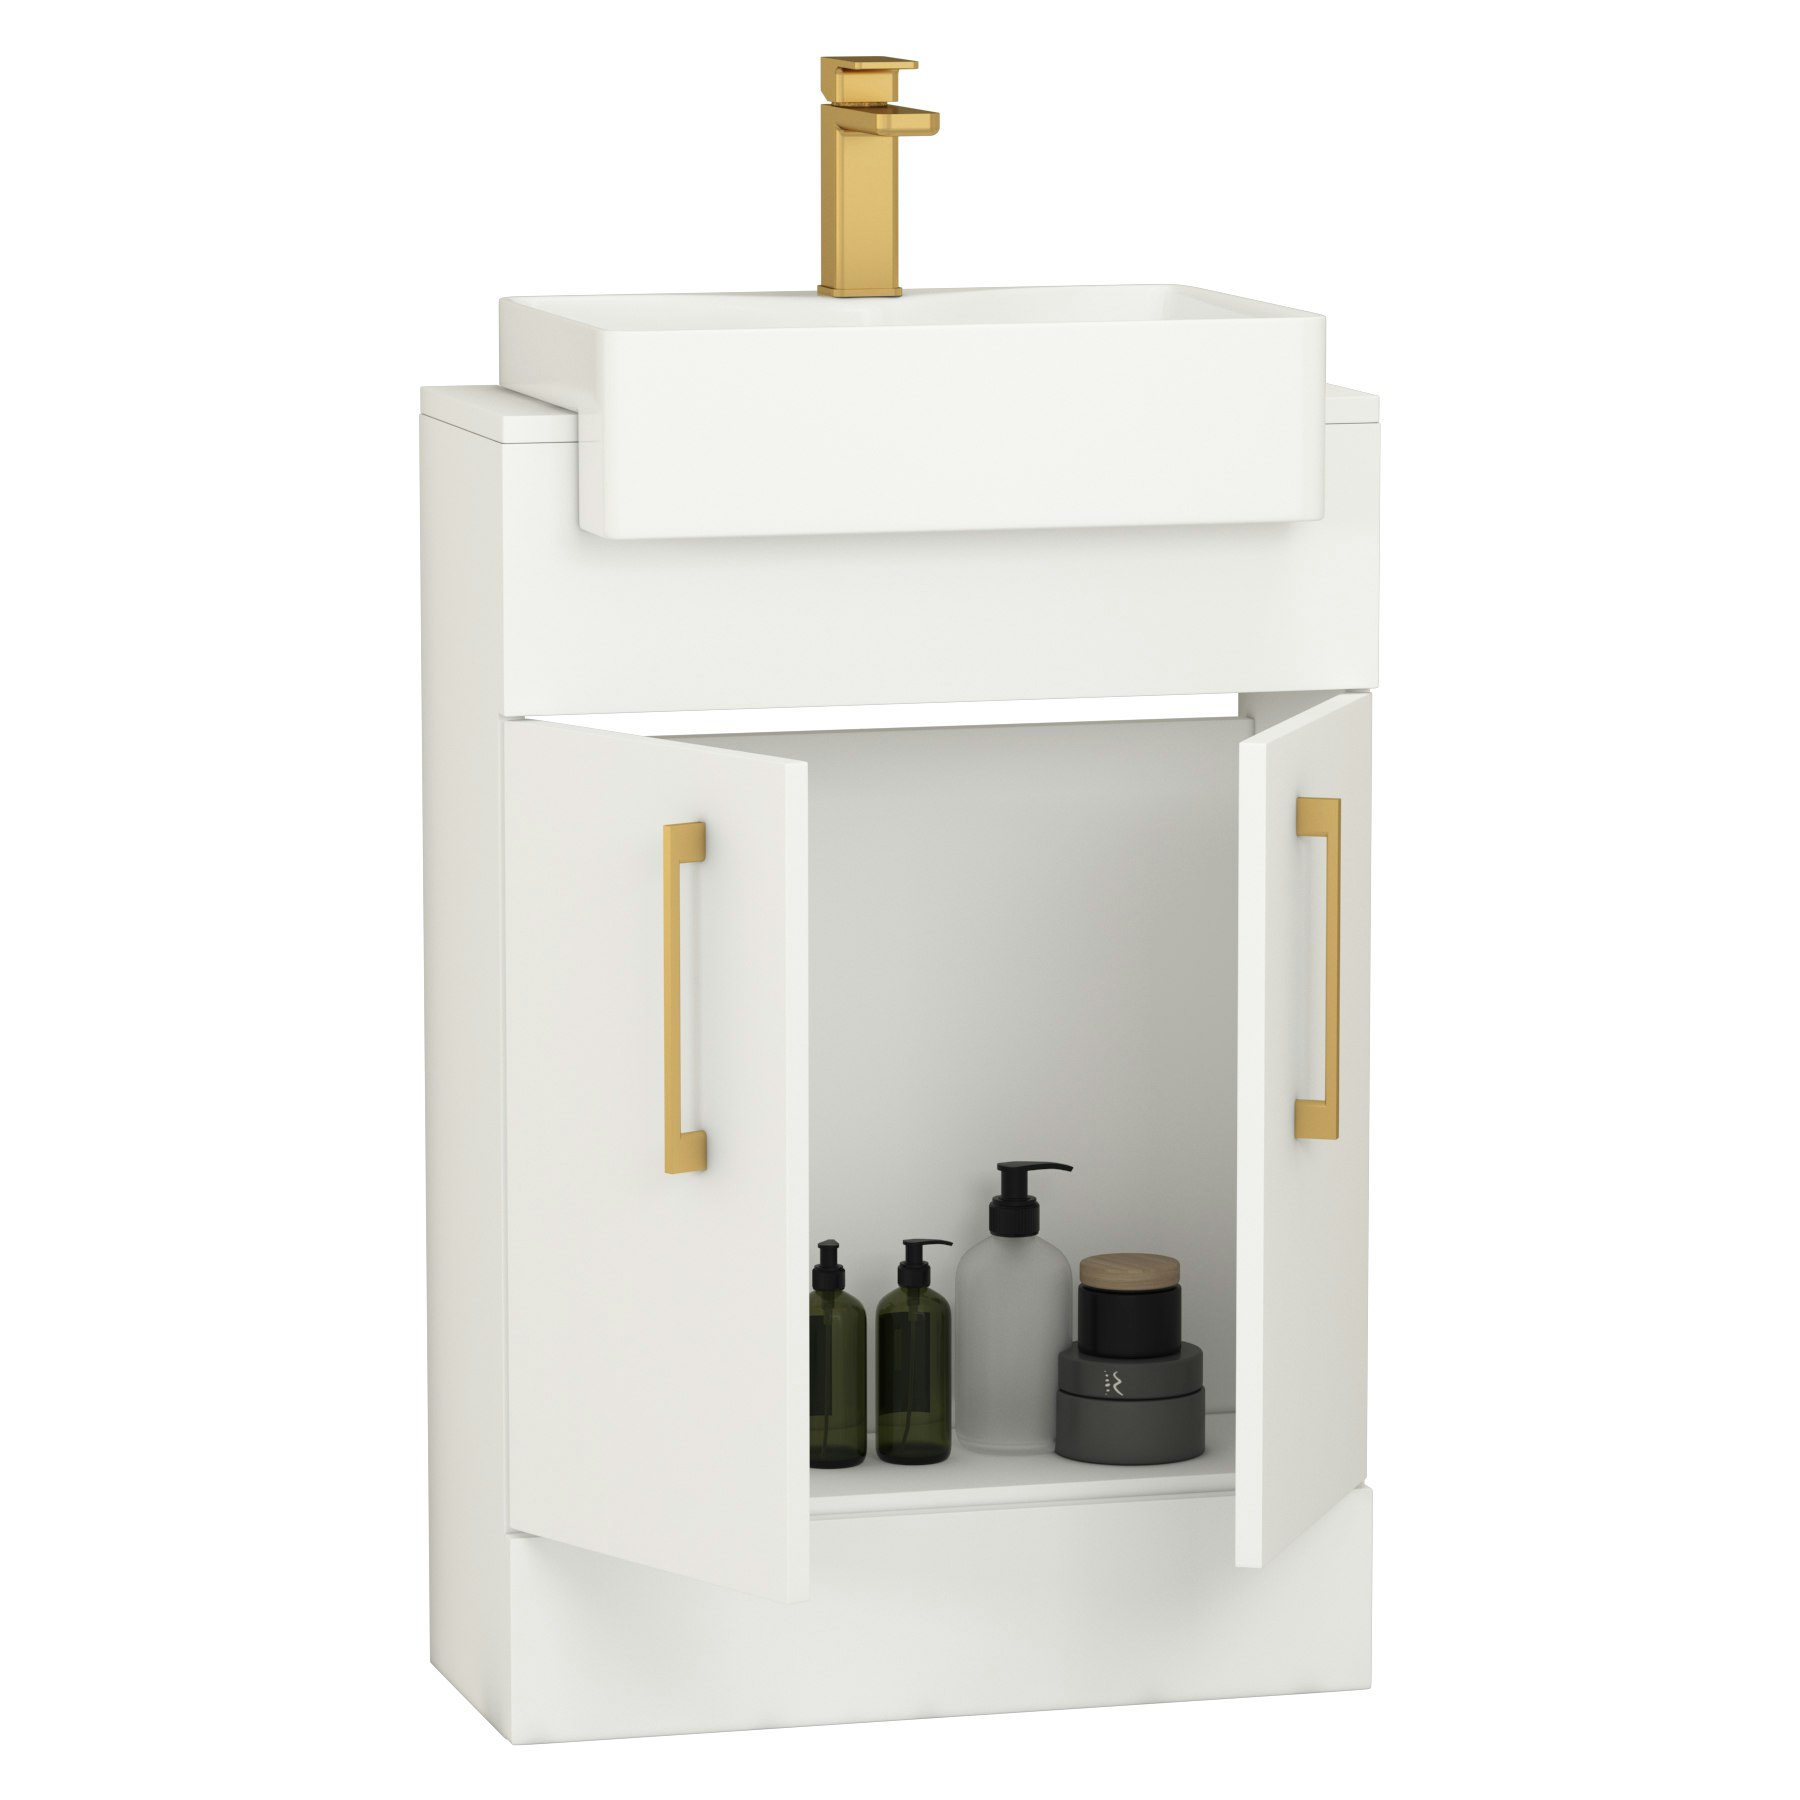 Elena 600mm Satin White Floor Standing Vanity Unit 2 Door With Semi Recessed Basin - Multiple Handles